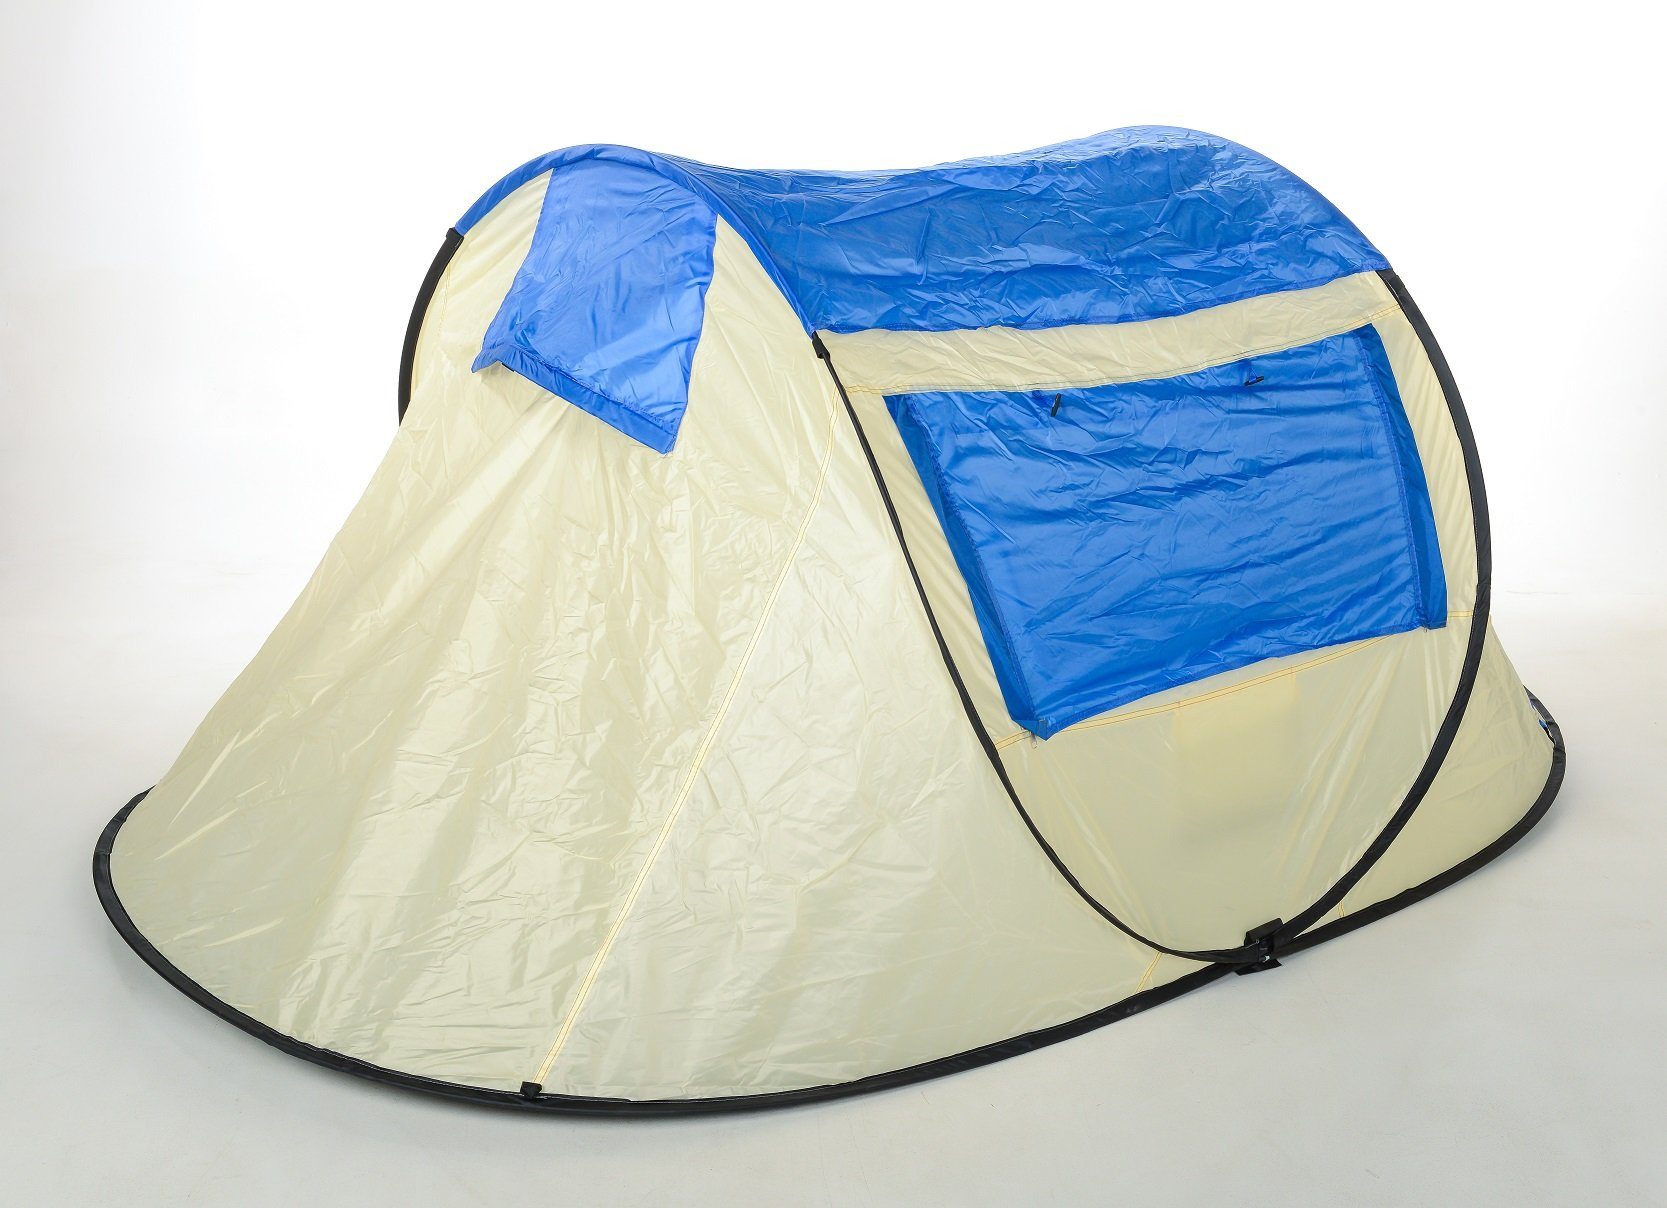 Zelt Sekundenzelt Wurf & 245x145x110cm Diverse inkl. Tent Defactoshop Herringe Wurfzelt Up Pop Seile, 20 Person Campingzelt Outdoor Personen: beige-schwarz 2-3 Farben